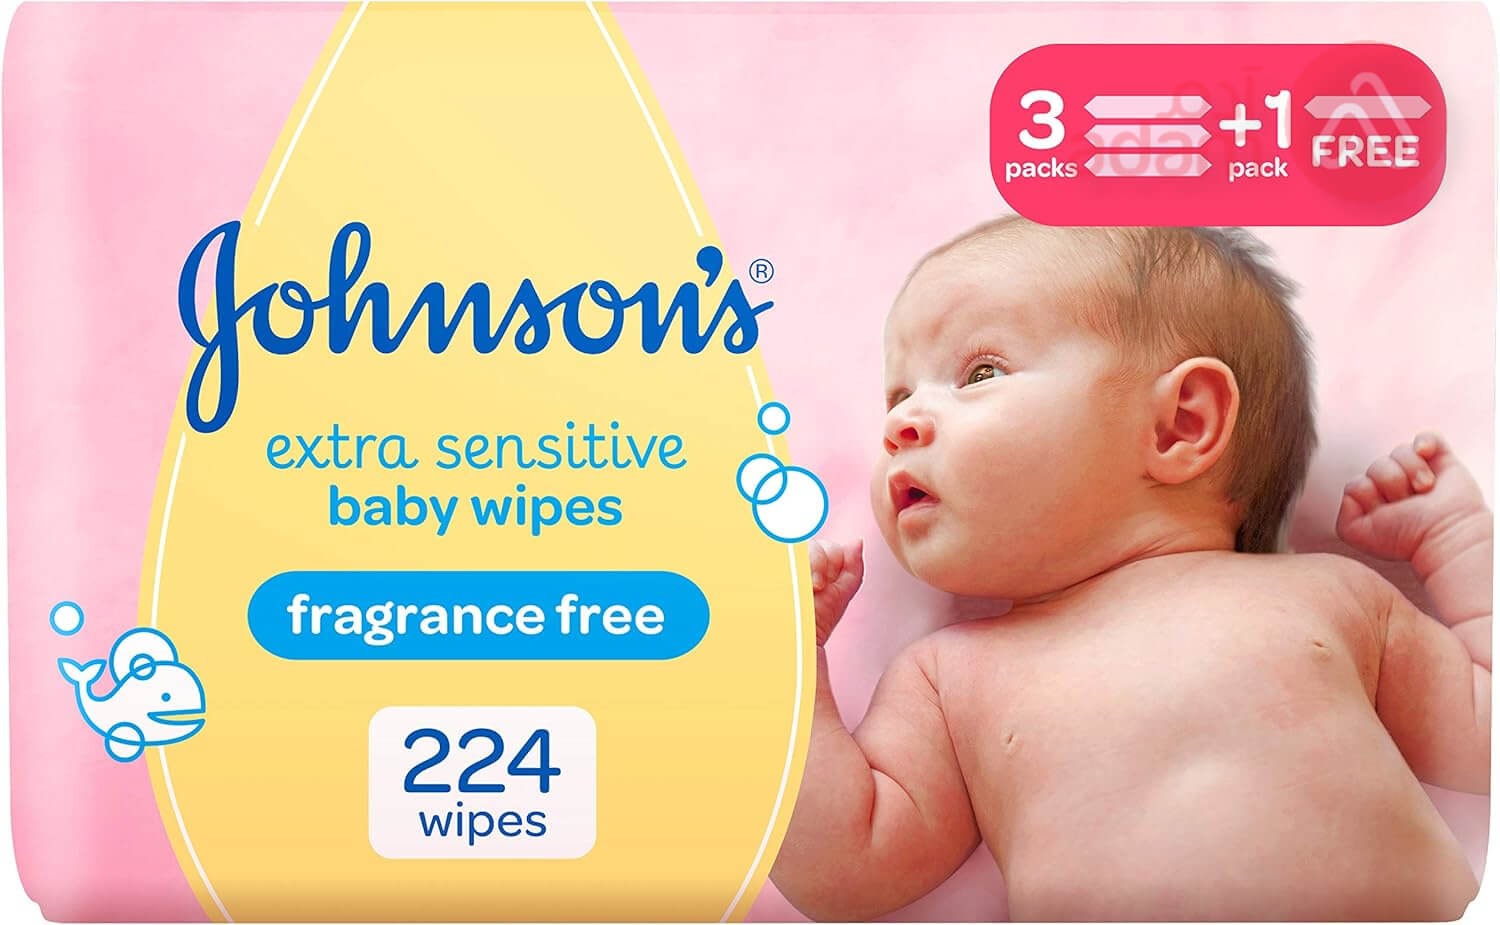 جونسون مناديل لتنظيف لطيف لكامل الجسم للأطفال (3 + 1) | 224 منديل